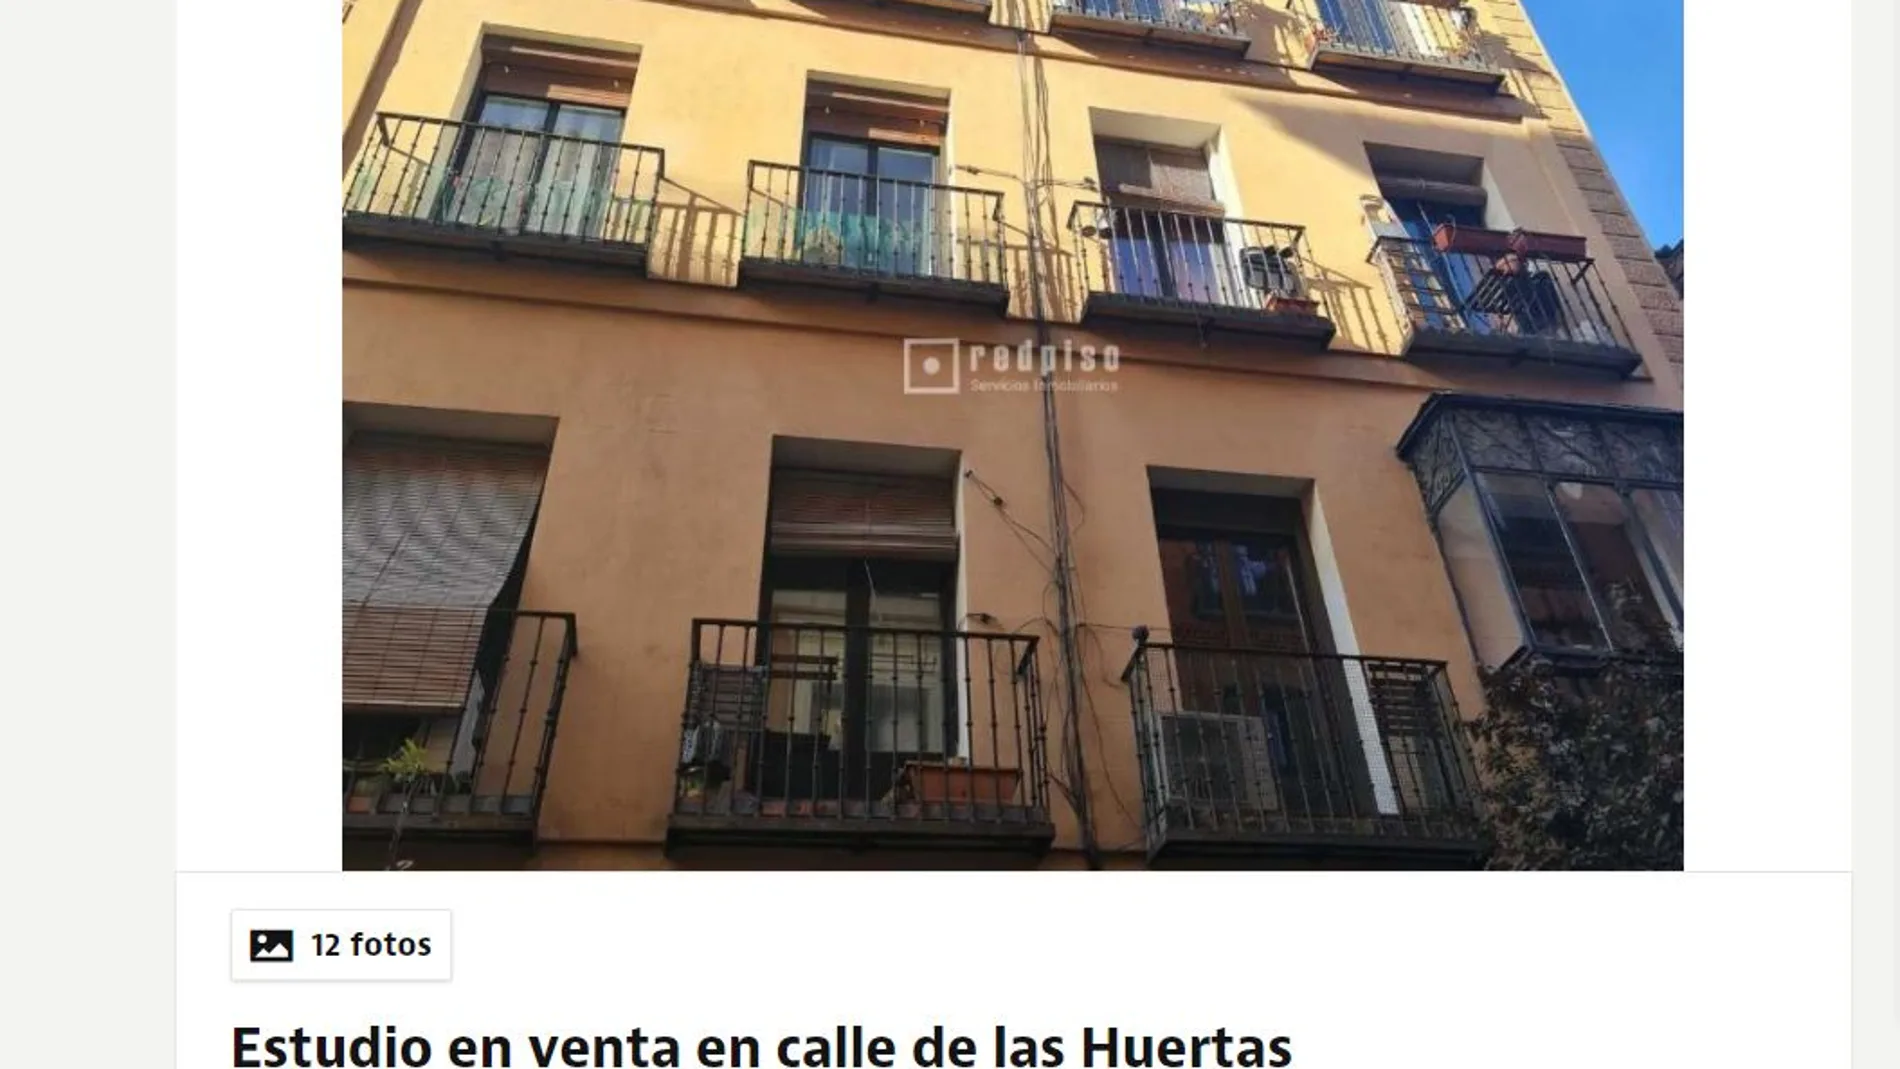 Se vende: Idealista cuelga la oferta de una buhardilla de cinco metros cuadrados habitables por 65.000 euros